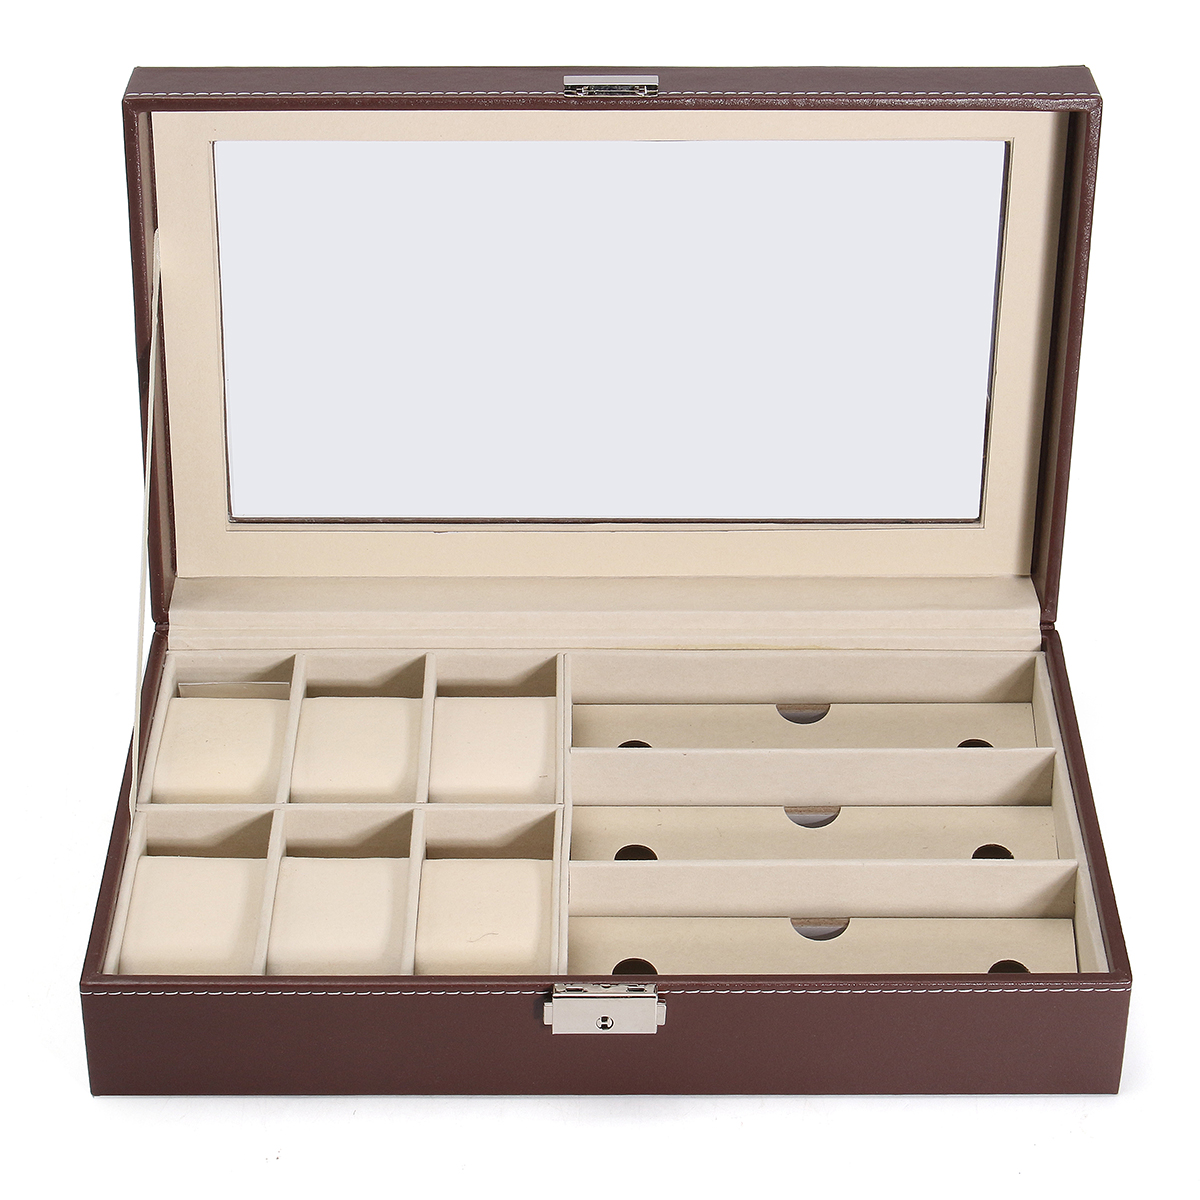 Мульти-сетки древесины кожаные очки стеклянный ящик часы дисплей хранения случай